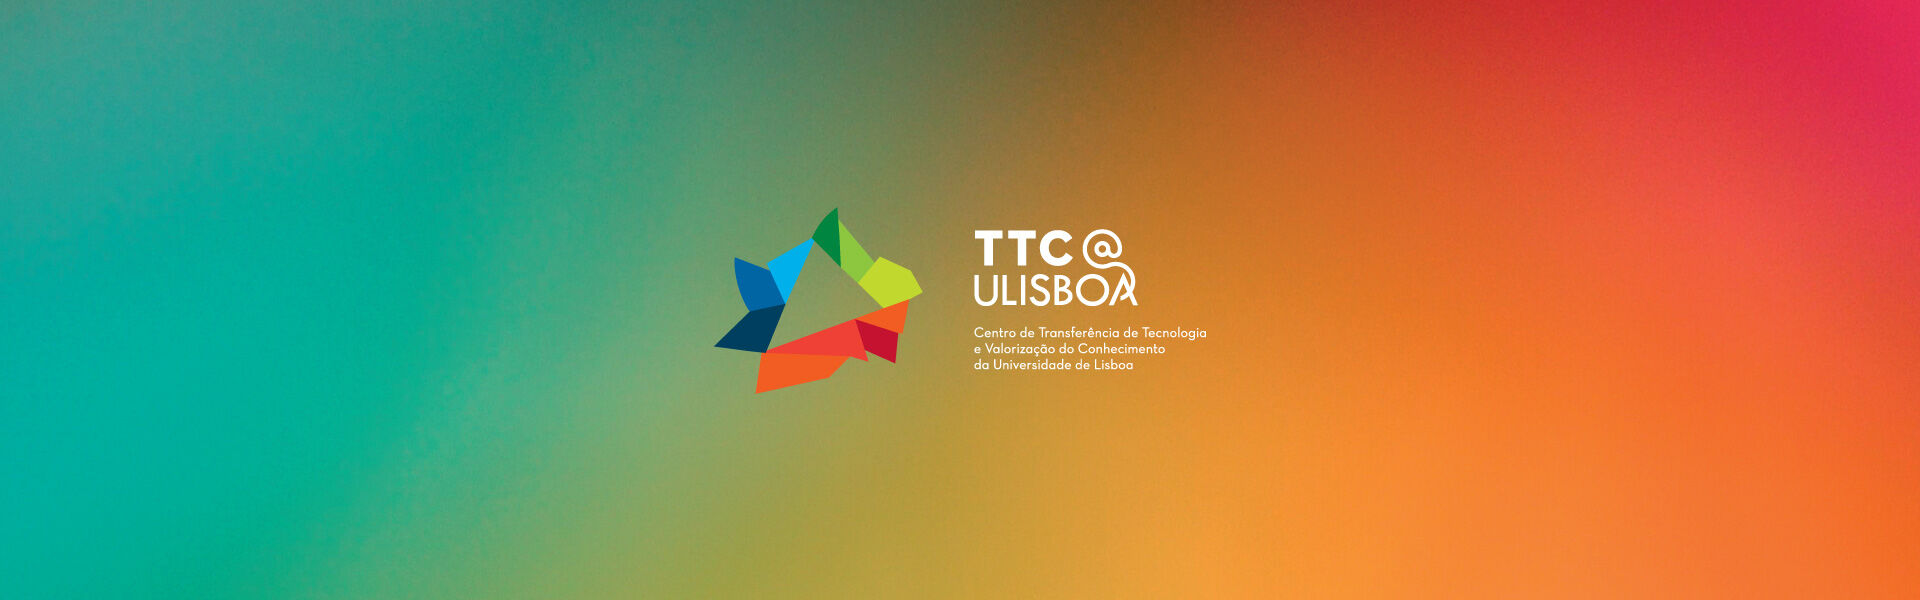 TTC@ULisboa — Centro de Transferência de Tecnologia e Valorização do Conhecimento da Universidade de Lisboa